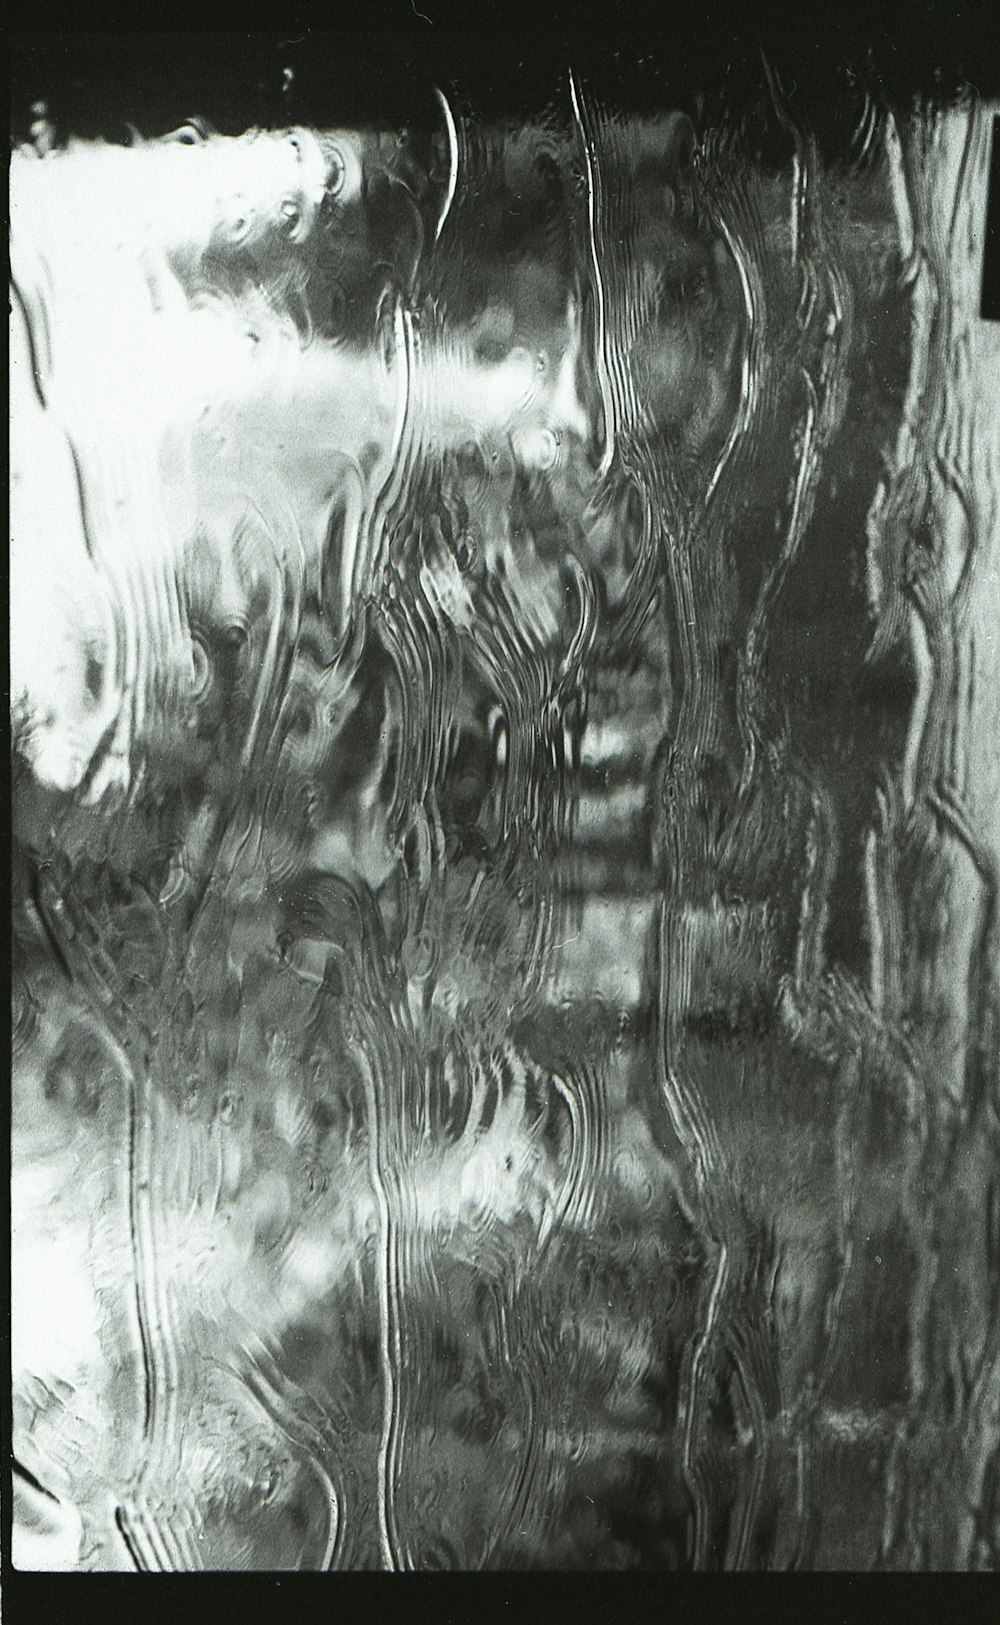 gotículas de água no painel de vidro